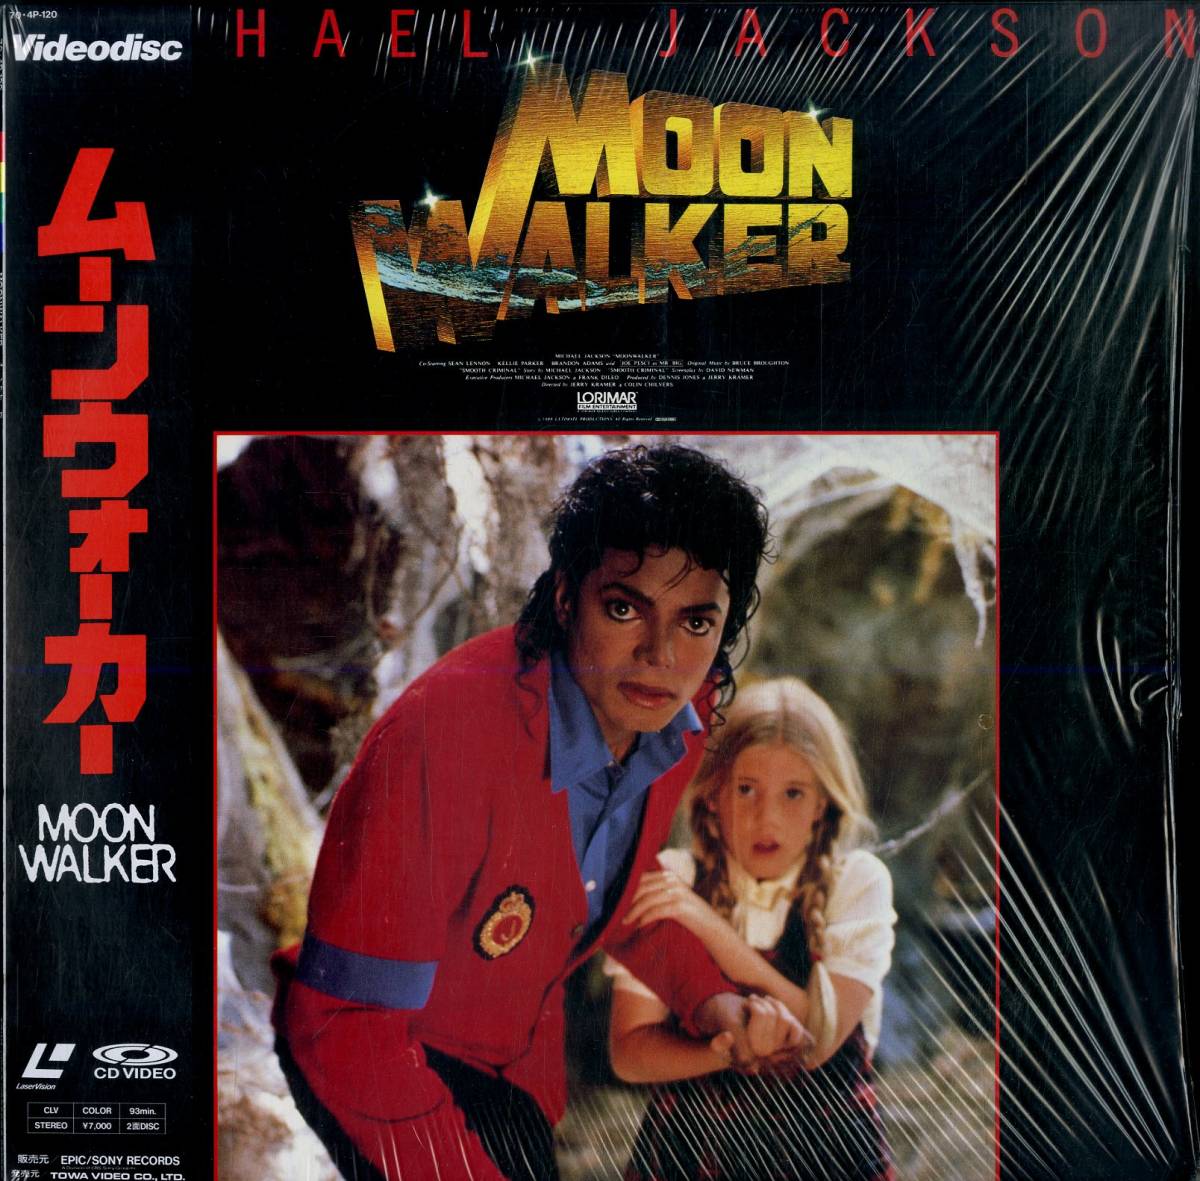 B00174757/LD/マイケル・ジャクソン(MICHAEL JACKSON)「Moonwalker ムーンウォーカー (1988年・70-4P-120・シンセポップ)」_画像1